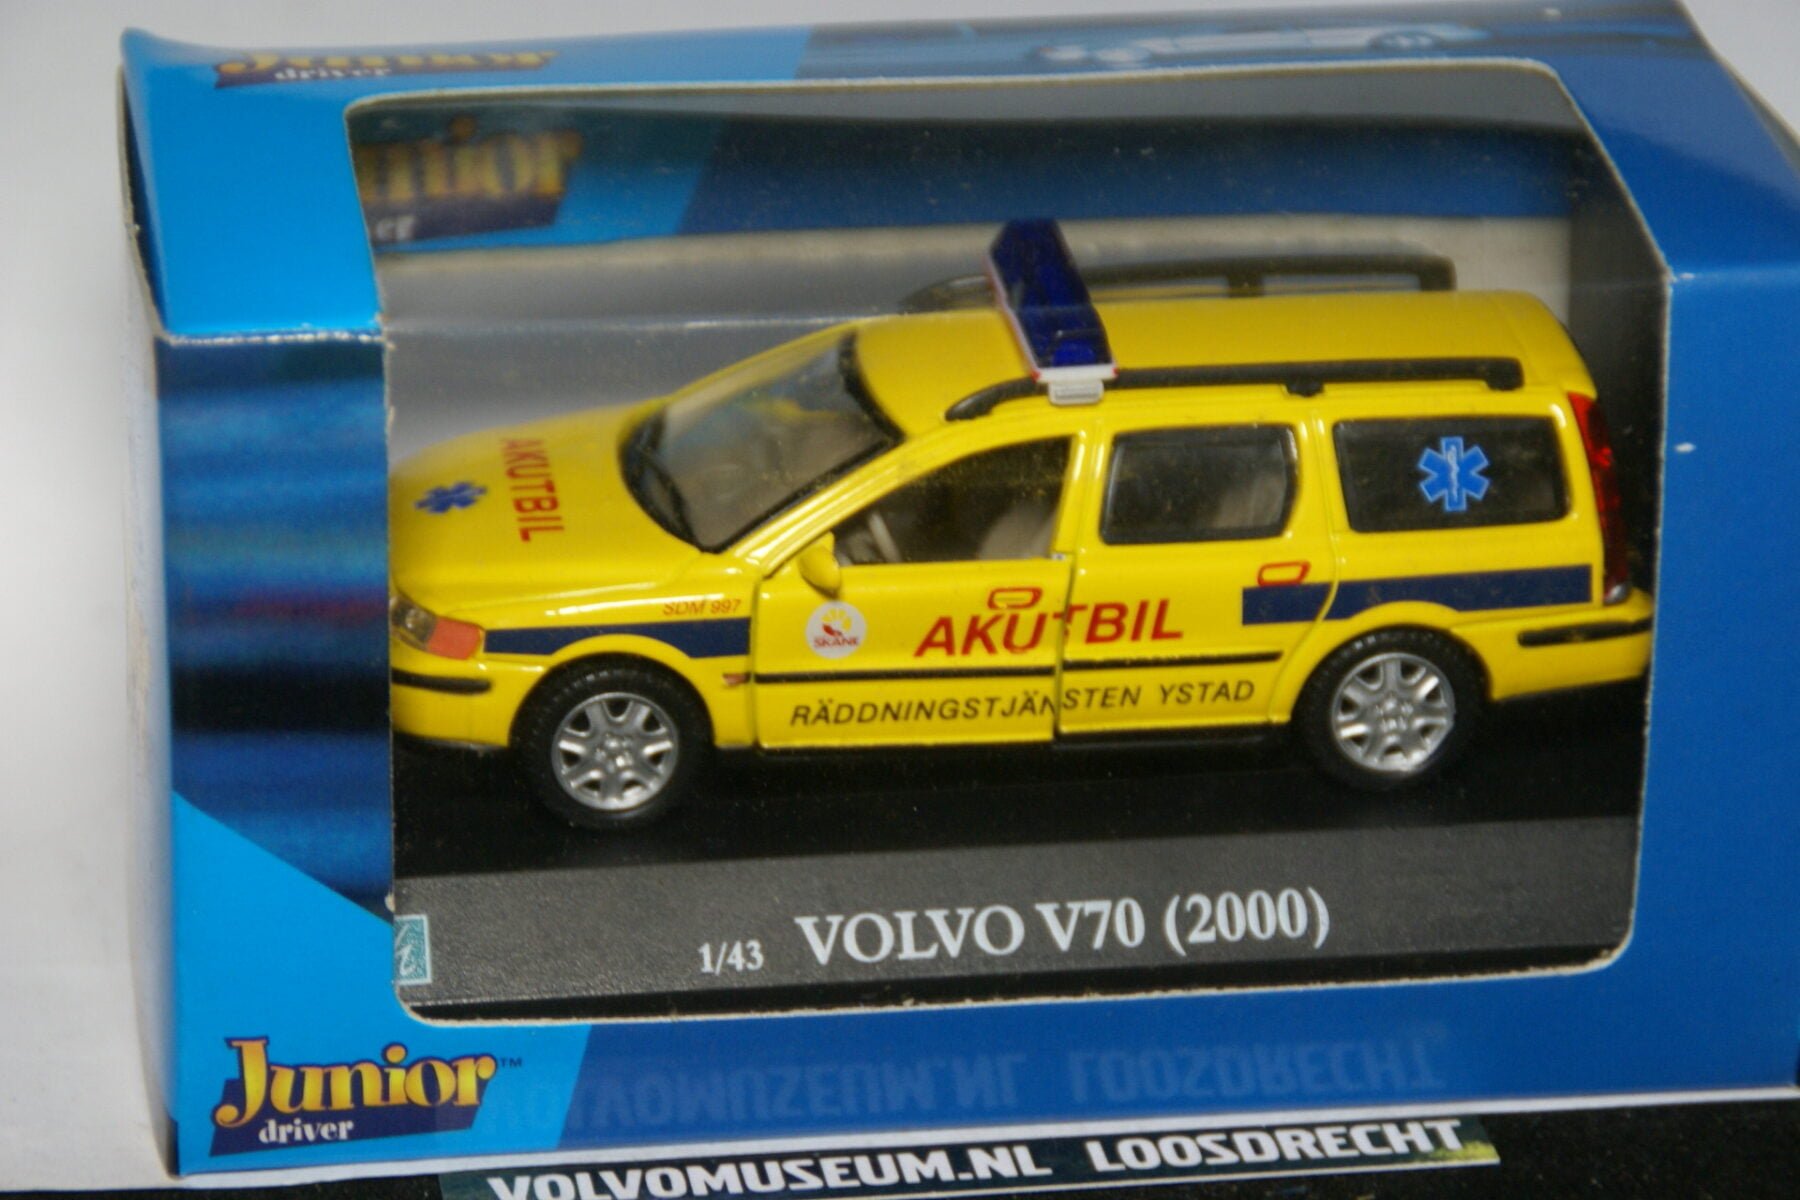 DSC02856 miniatuur 2000 Volvo V70 Akutbil geel 1op43 Brio  181697 MB